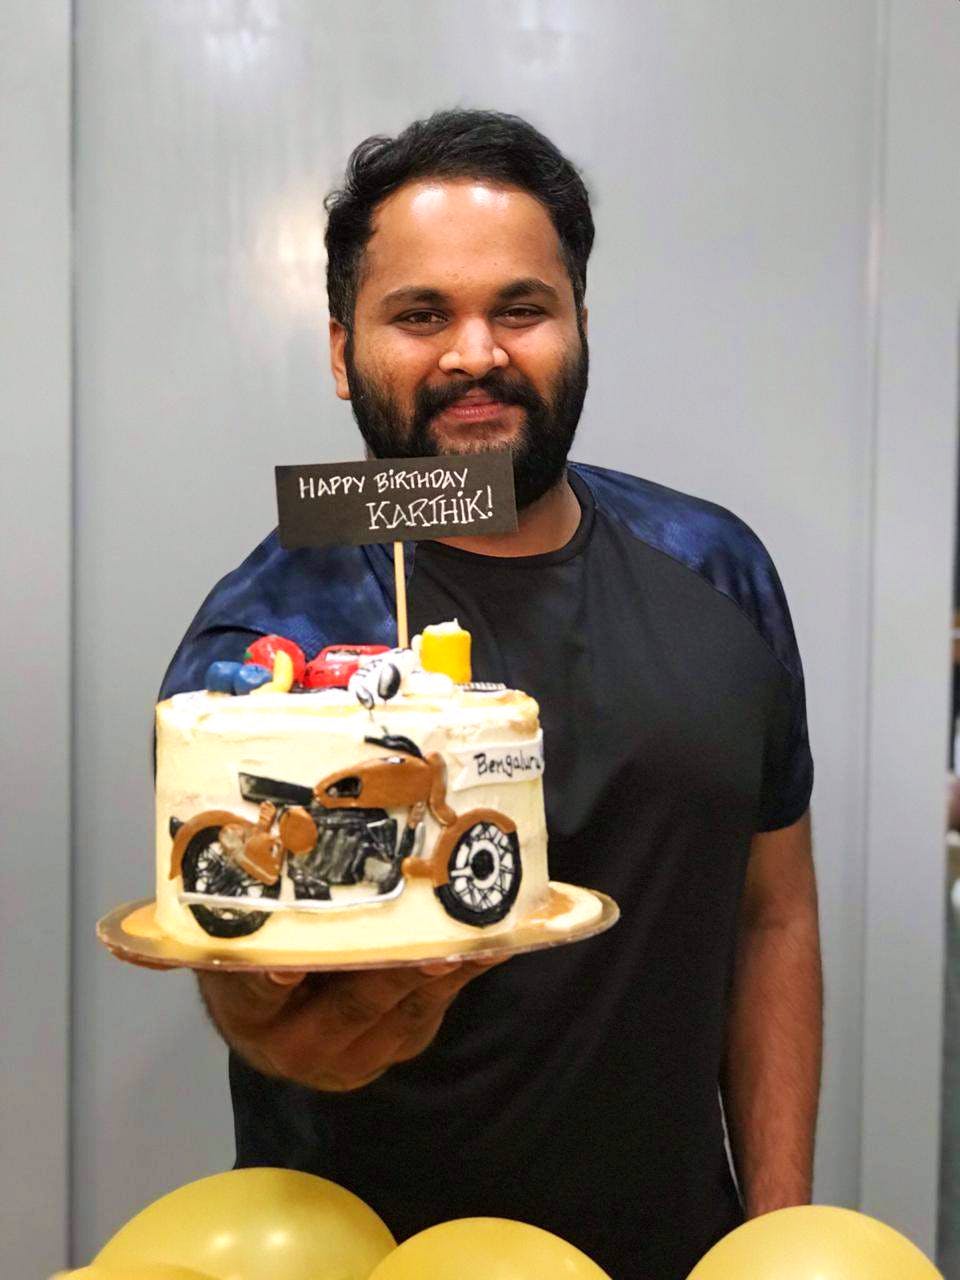 Beard Man Cake|Birthday cake Online Hyderabad|CakeSmash.in